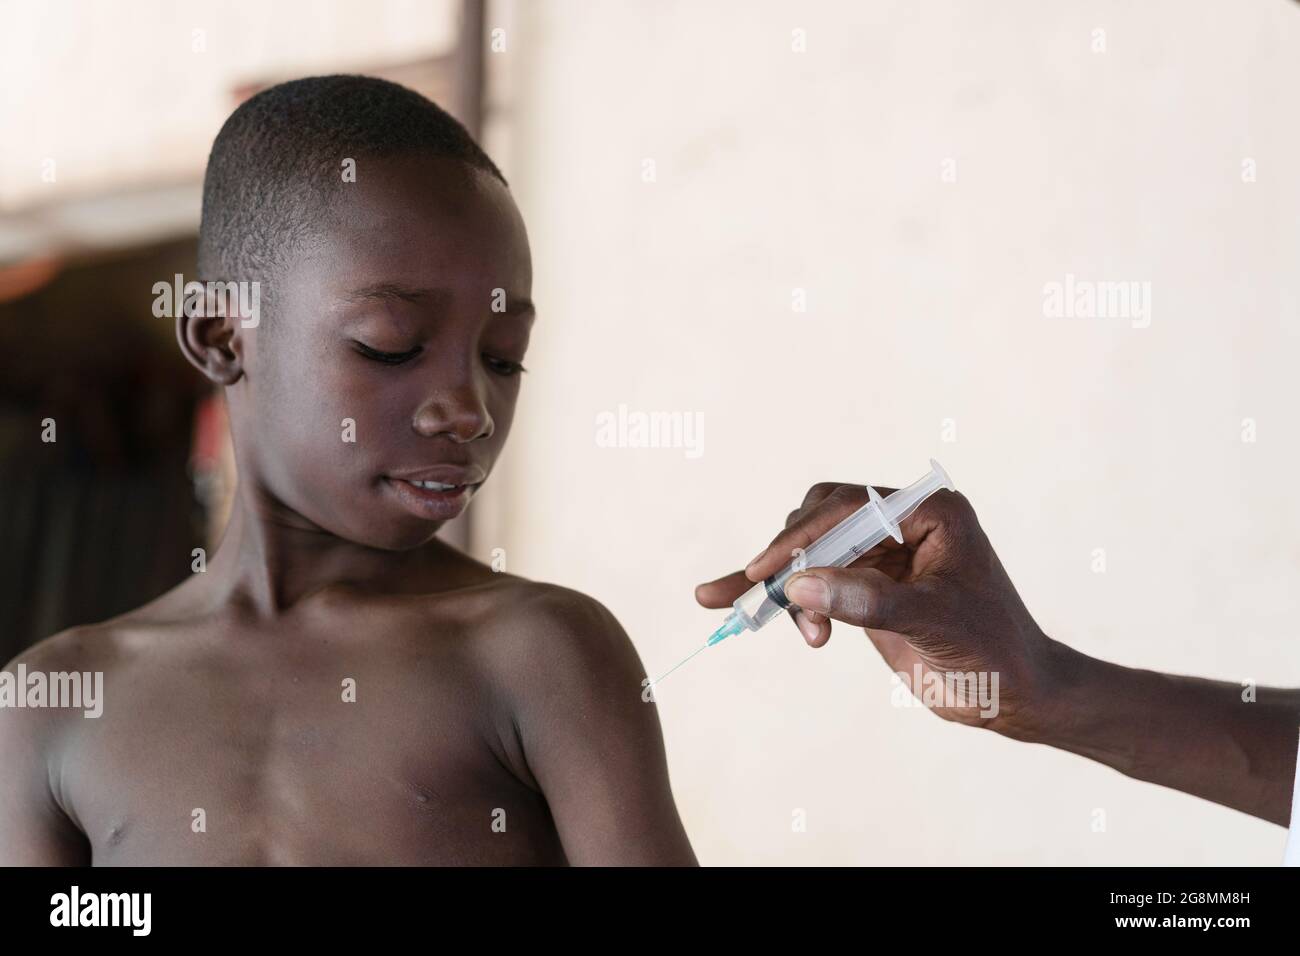 C'est l'image d'un jeune enfant africain adorable et noir souriant avant de recevoir son premier vaccin. Banque D'Images